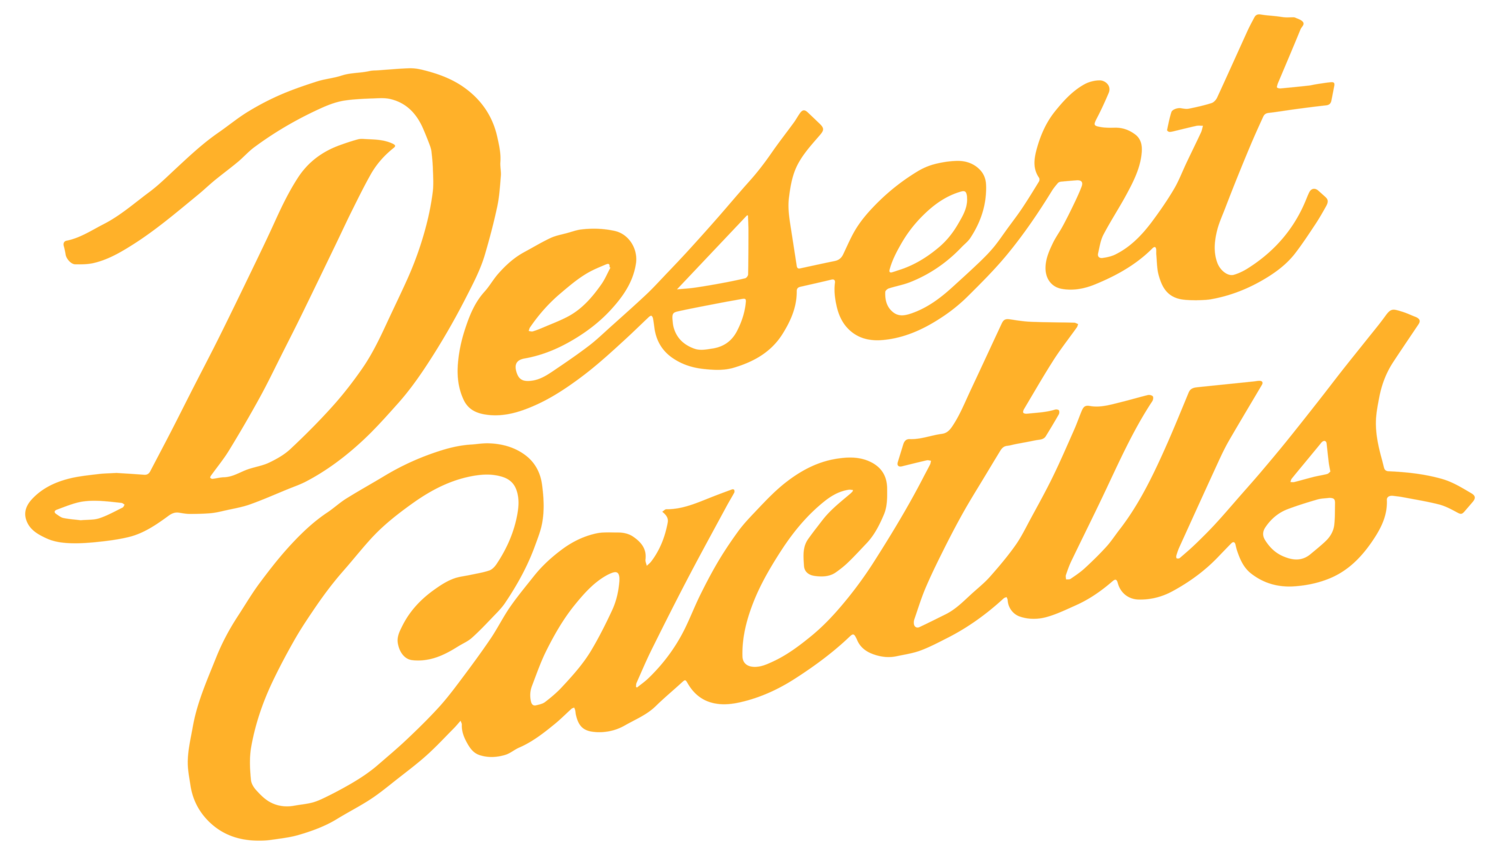 Desert Cactus Films